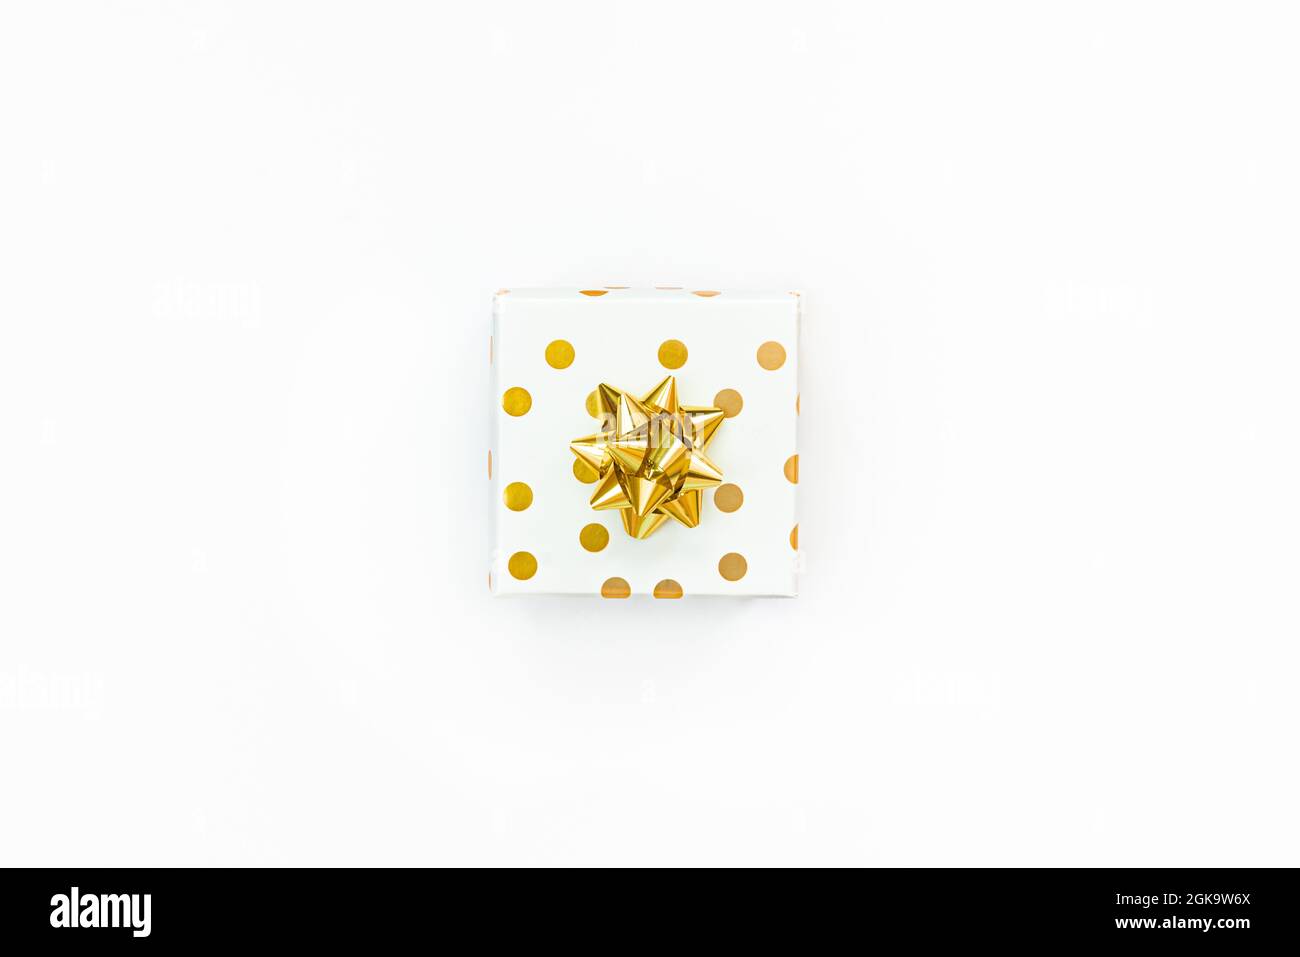 Vue de dessus d'une boîte cadeau à pois dorés sur fond blanc. Banque D'Images